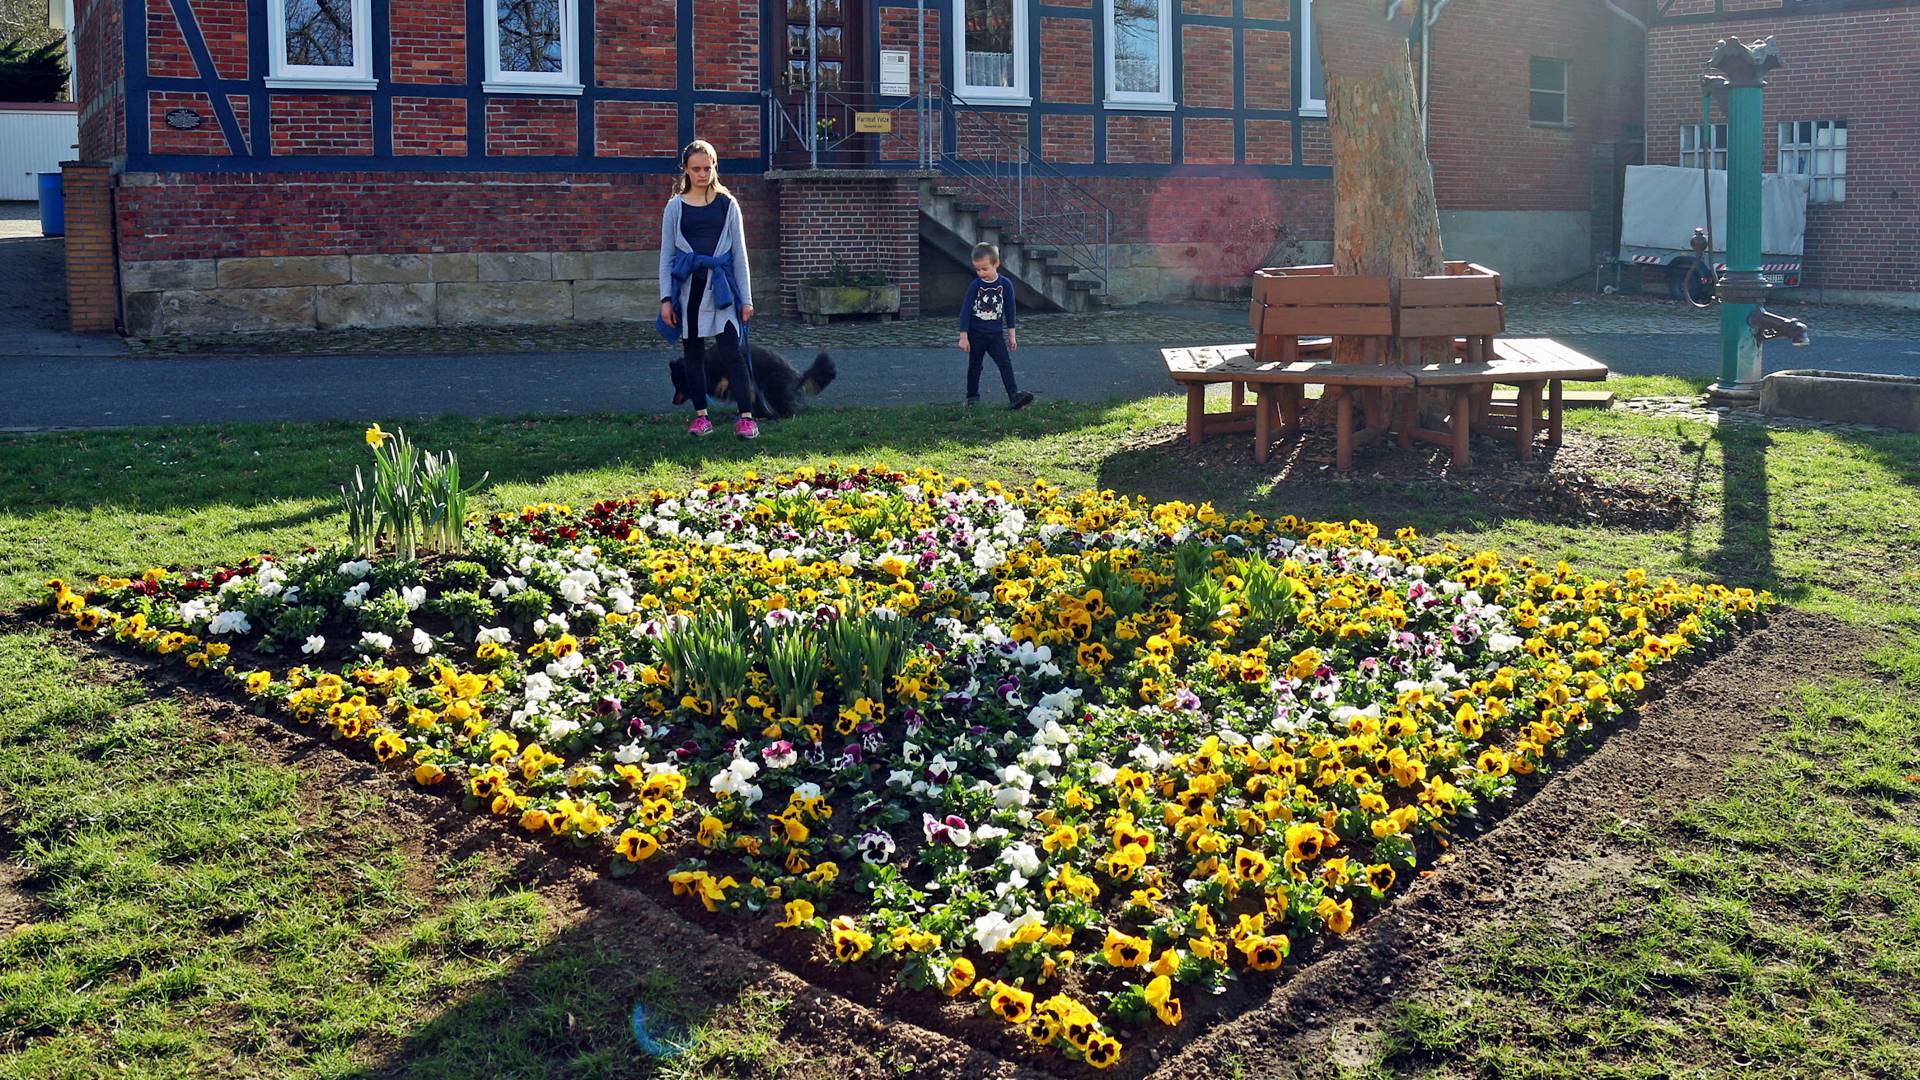 Blumenbeet mit bunten Stiefmütterchen und Osterglocken. Daneben steht eine historische Wasserpumpe. Im Hintergrund steht ein Baum mit einer Sitzbank, ein Haus, zwei Personen und ein Hund.